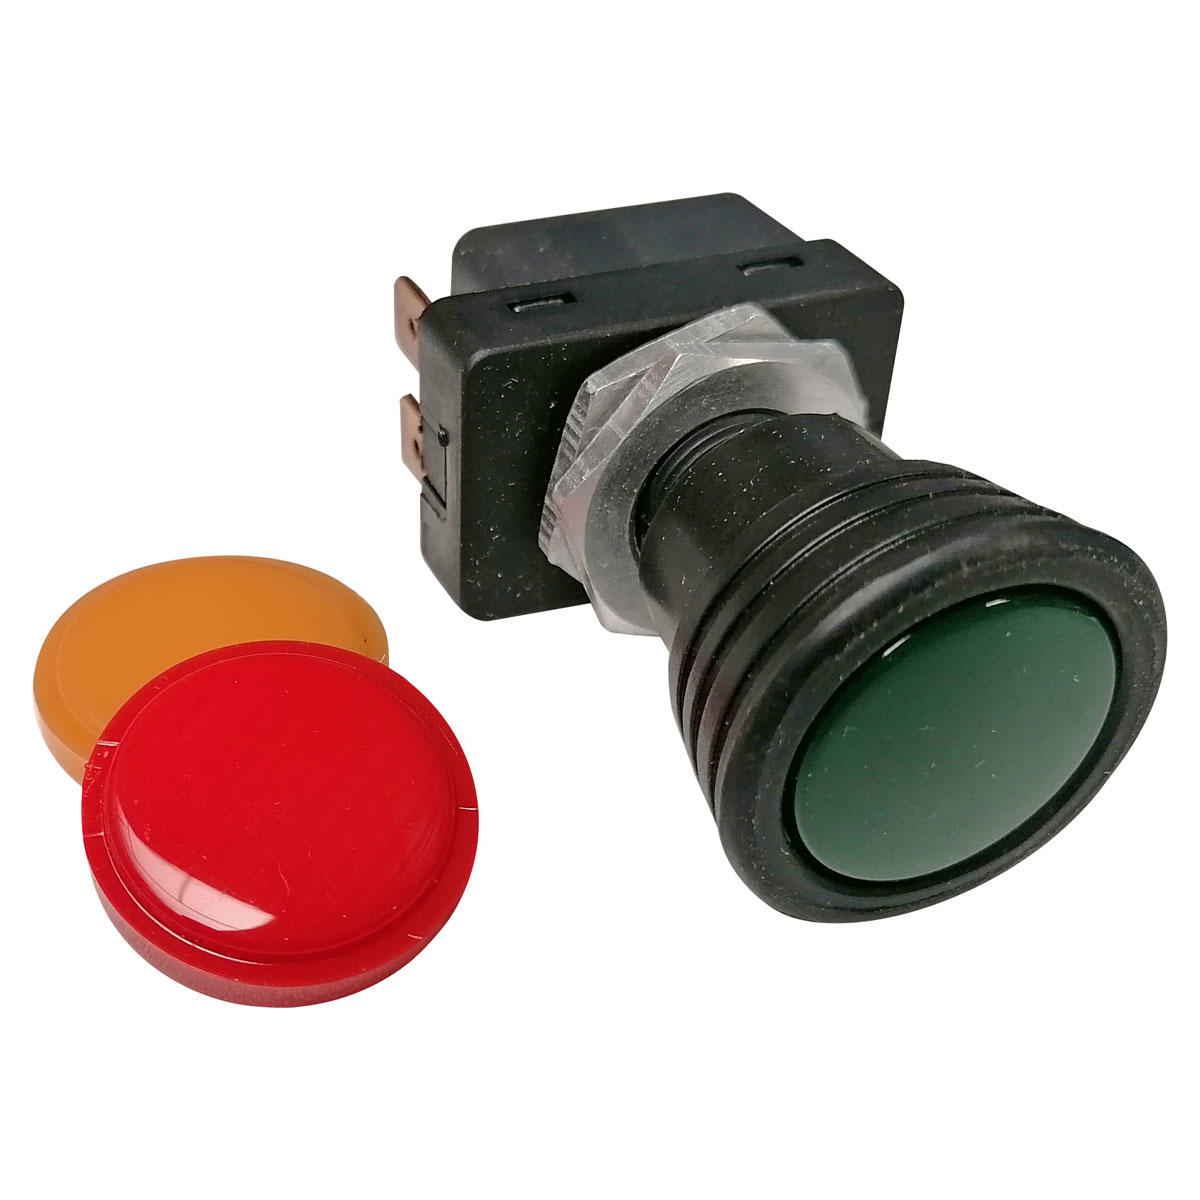 Ein/Aus-Schalter mit 3 Farboptionen, grün/rot/gelb